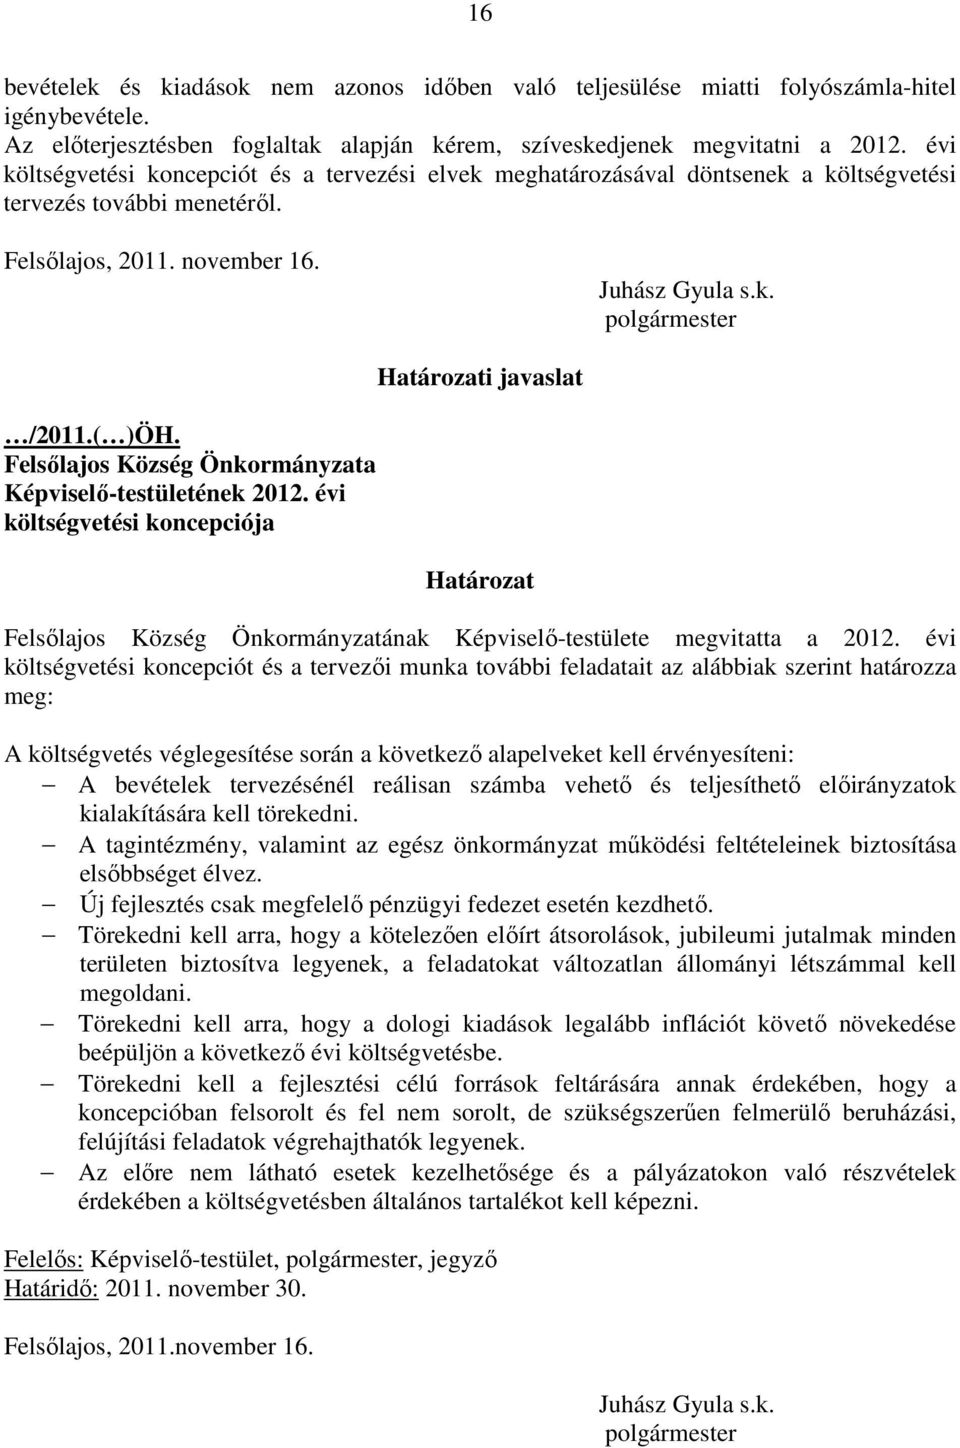 Felsılajos Község Önkormányzata Képviselı-testületének 2012. évi költségvetési koncepciója Határozati javaslat Határozat Felsılajos Község Önkormányzatának Képviselı-testülete megvitatta a 2012.